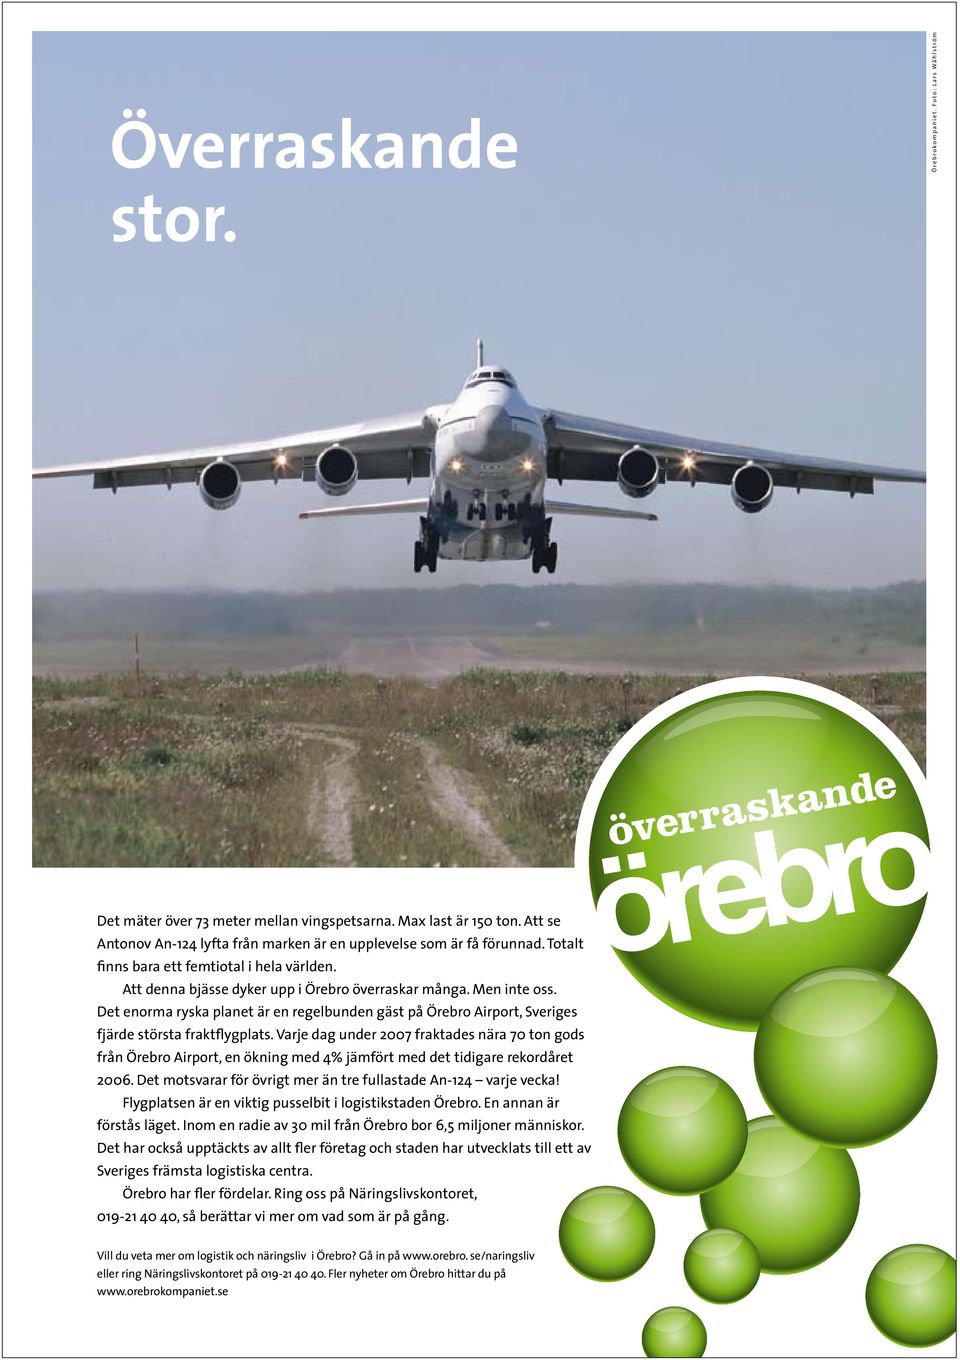 Varje dag under 2007 fraktades nära 70 ton gods från Örebro Airport, en ökning med 4% jämfört med det tidigare rekordåret 2006. Det motsvarar för övrigt mer än tre fullastade An-124 varje vecka!